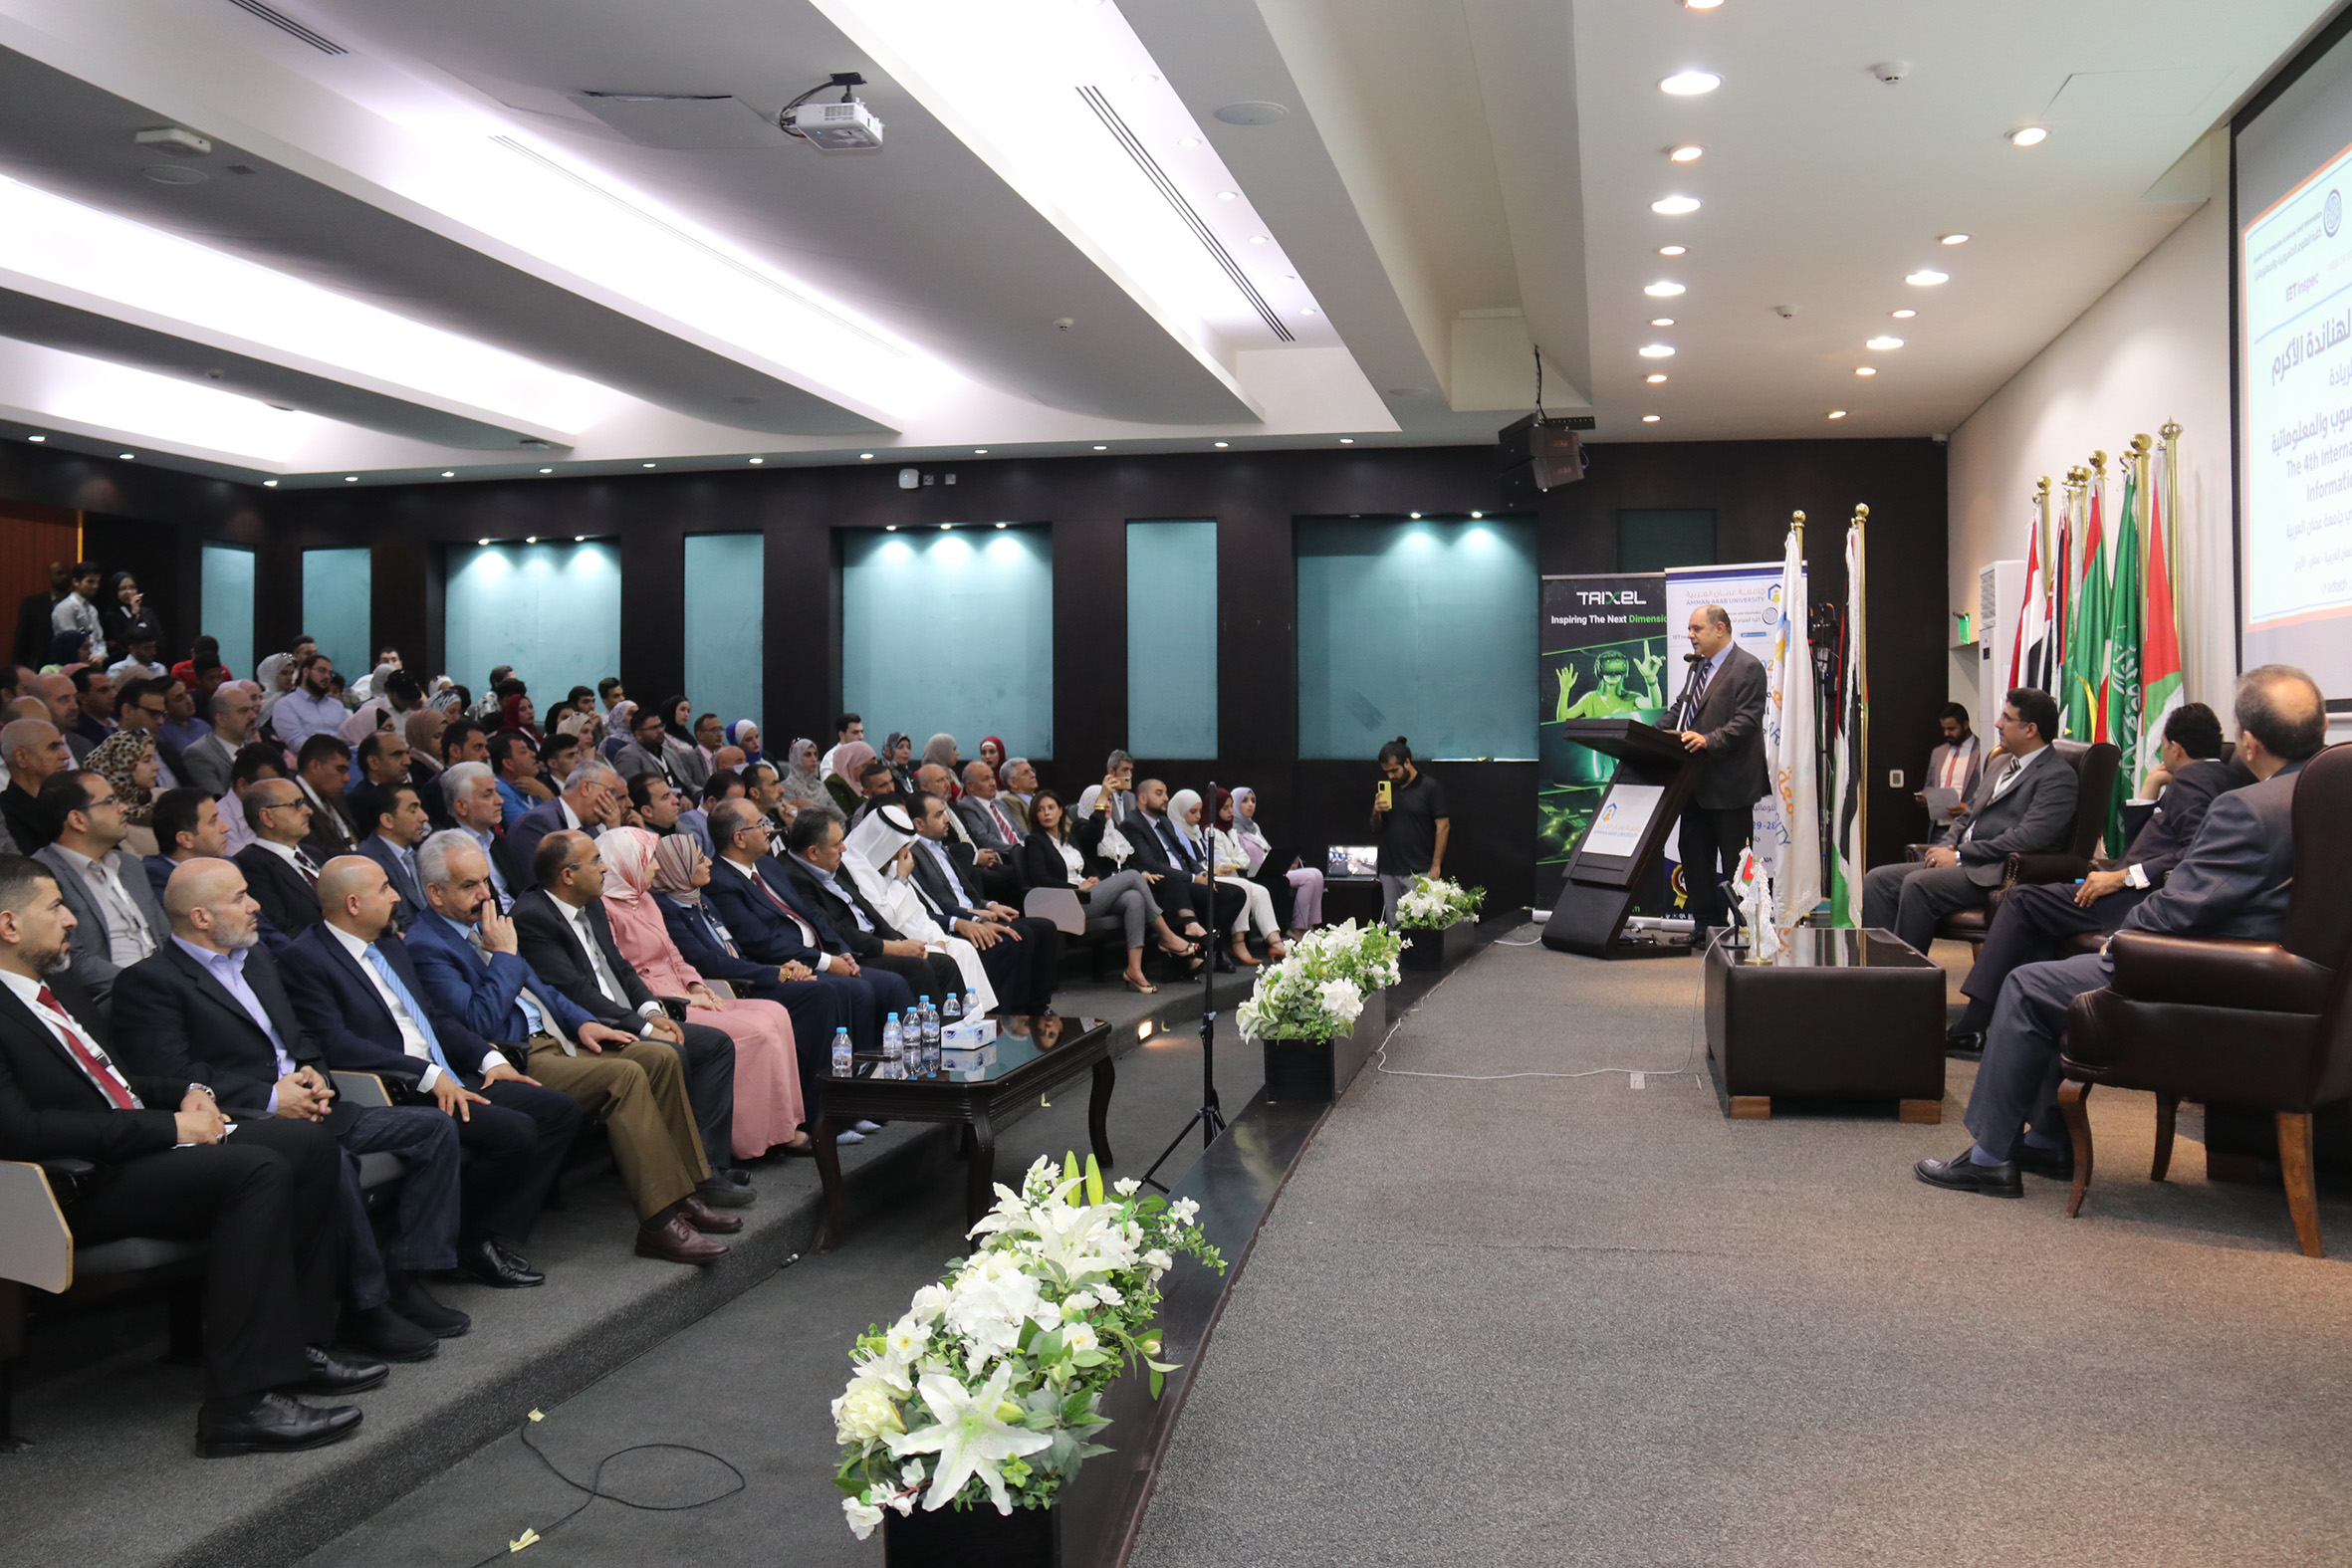 الهناندة يرعى افتتاح فعاليات المؤتمر الدولي الرابع في العلوم الحاسوبية والمعلوماتية في "عمان العربية"16